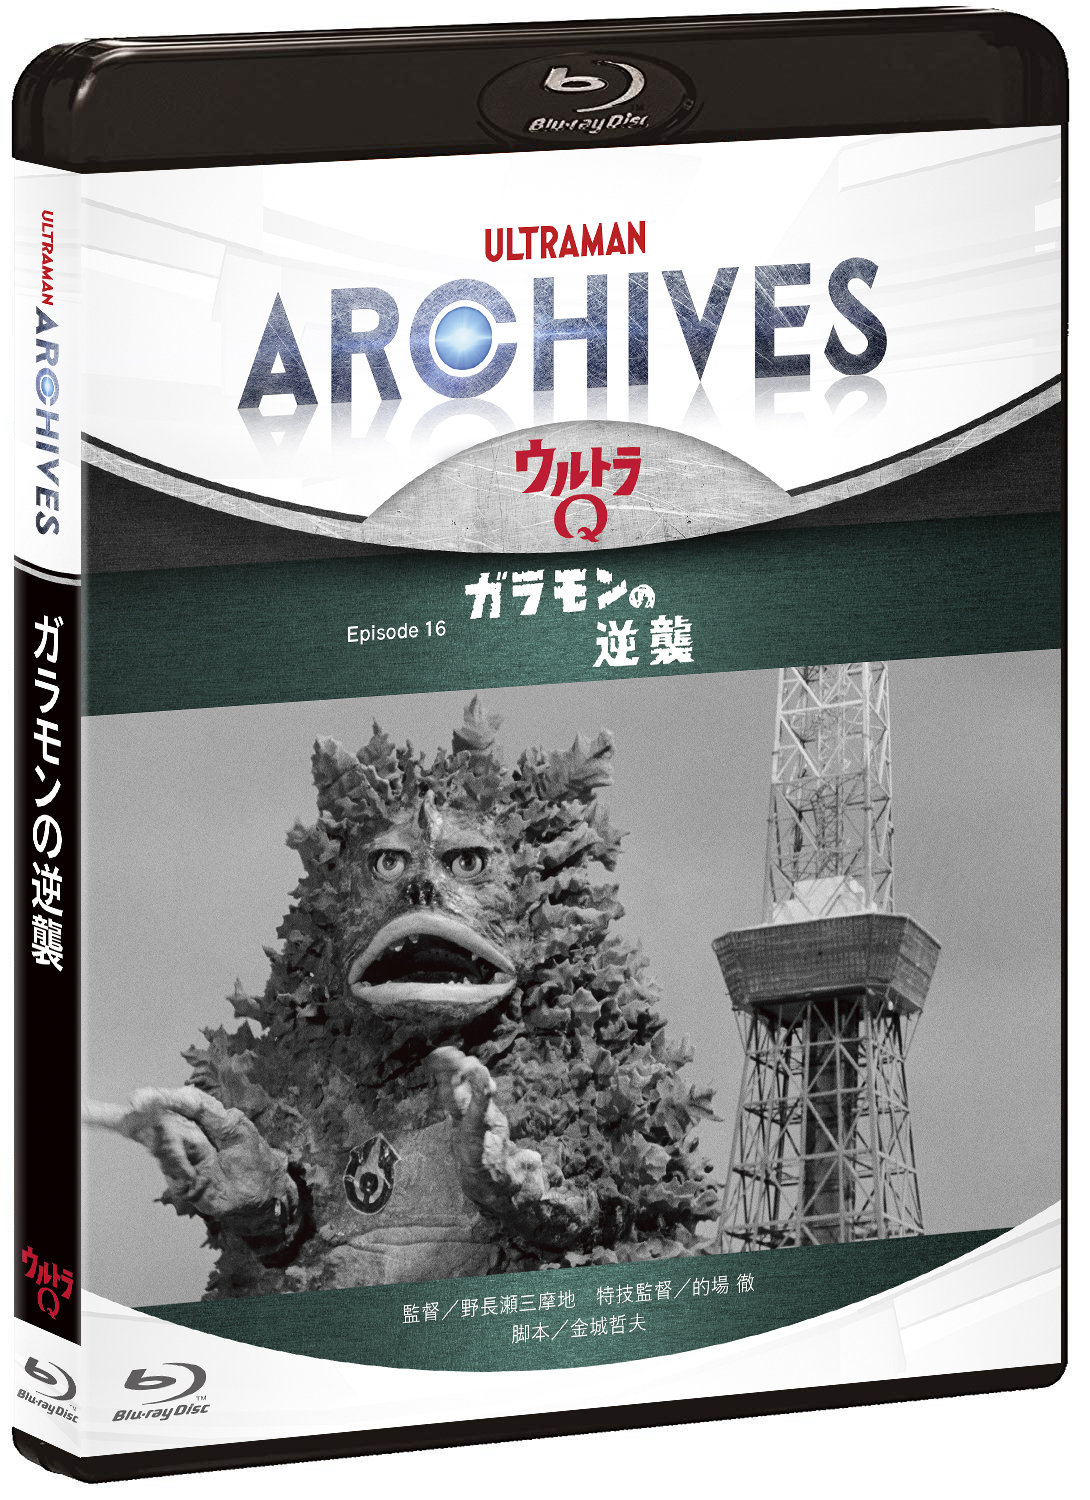 Ultraman Archives プロジェクト ビデオグラム第2弾 ウルトラq Episode 16 ガラモンの逆襲 5 22 水 発売決定 円谷ステーション